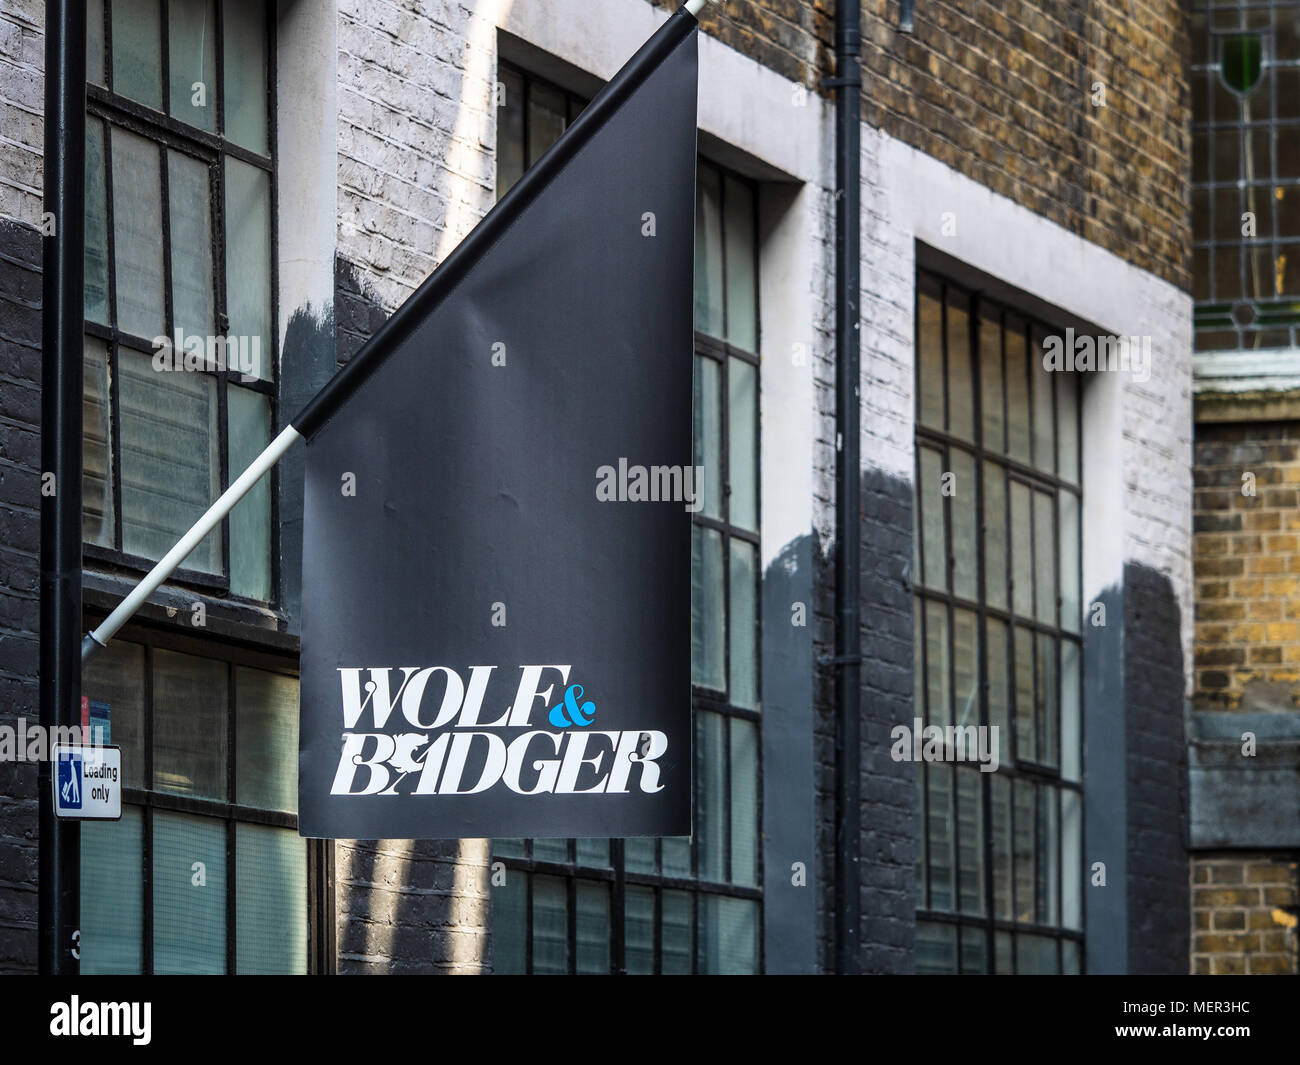 Wolf et Badger studio london - drapeau à l'extérieur du Loup et Badger's Creative Studio à Londres Shoreditch. Banque D'Images